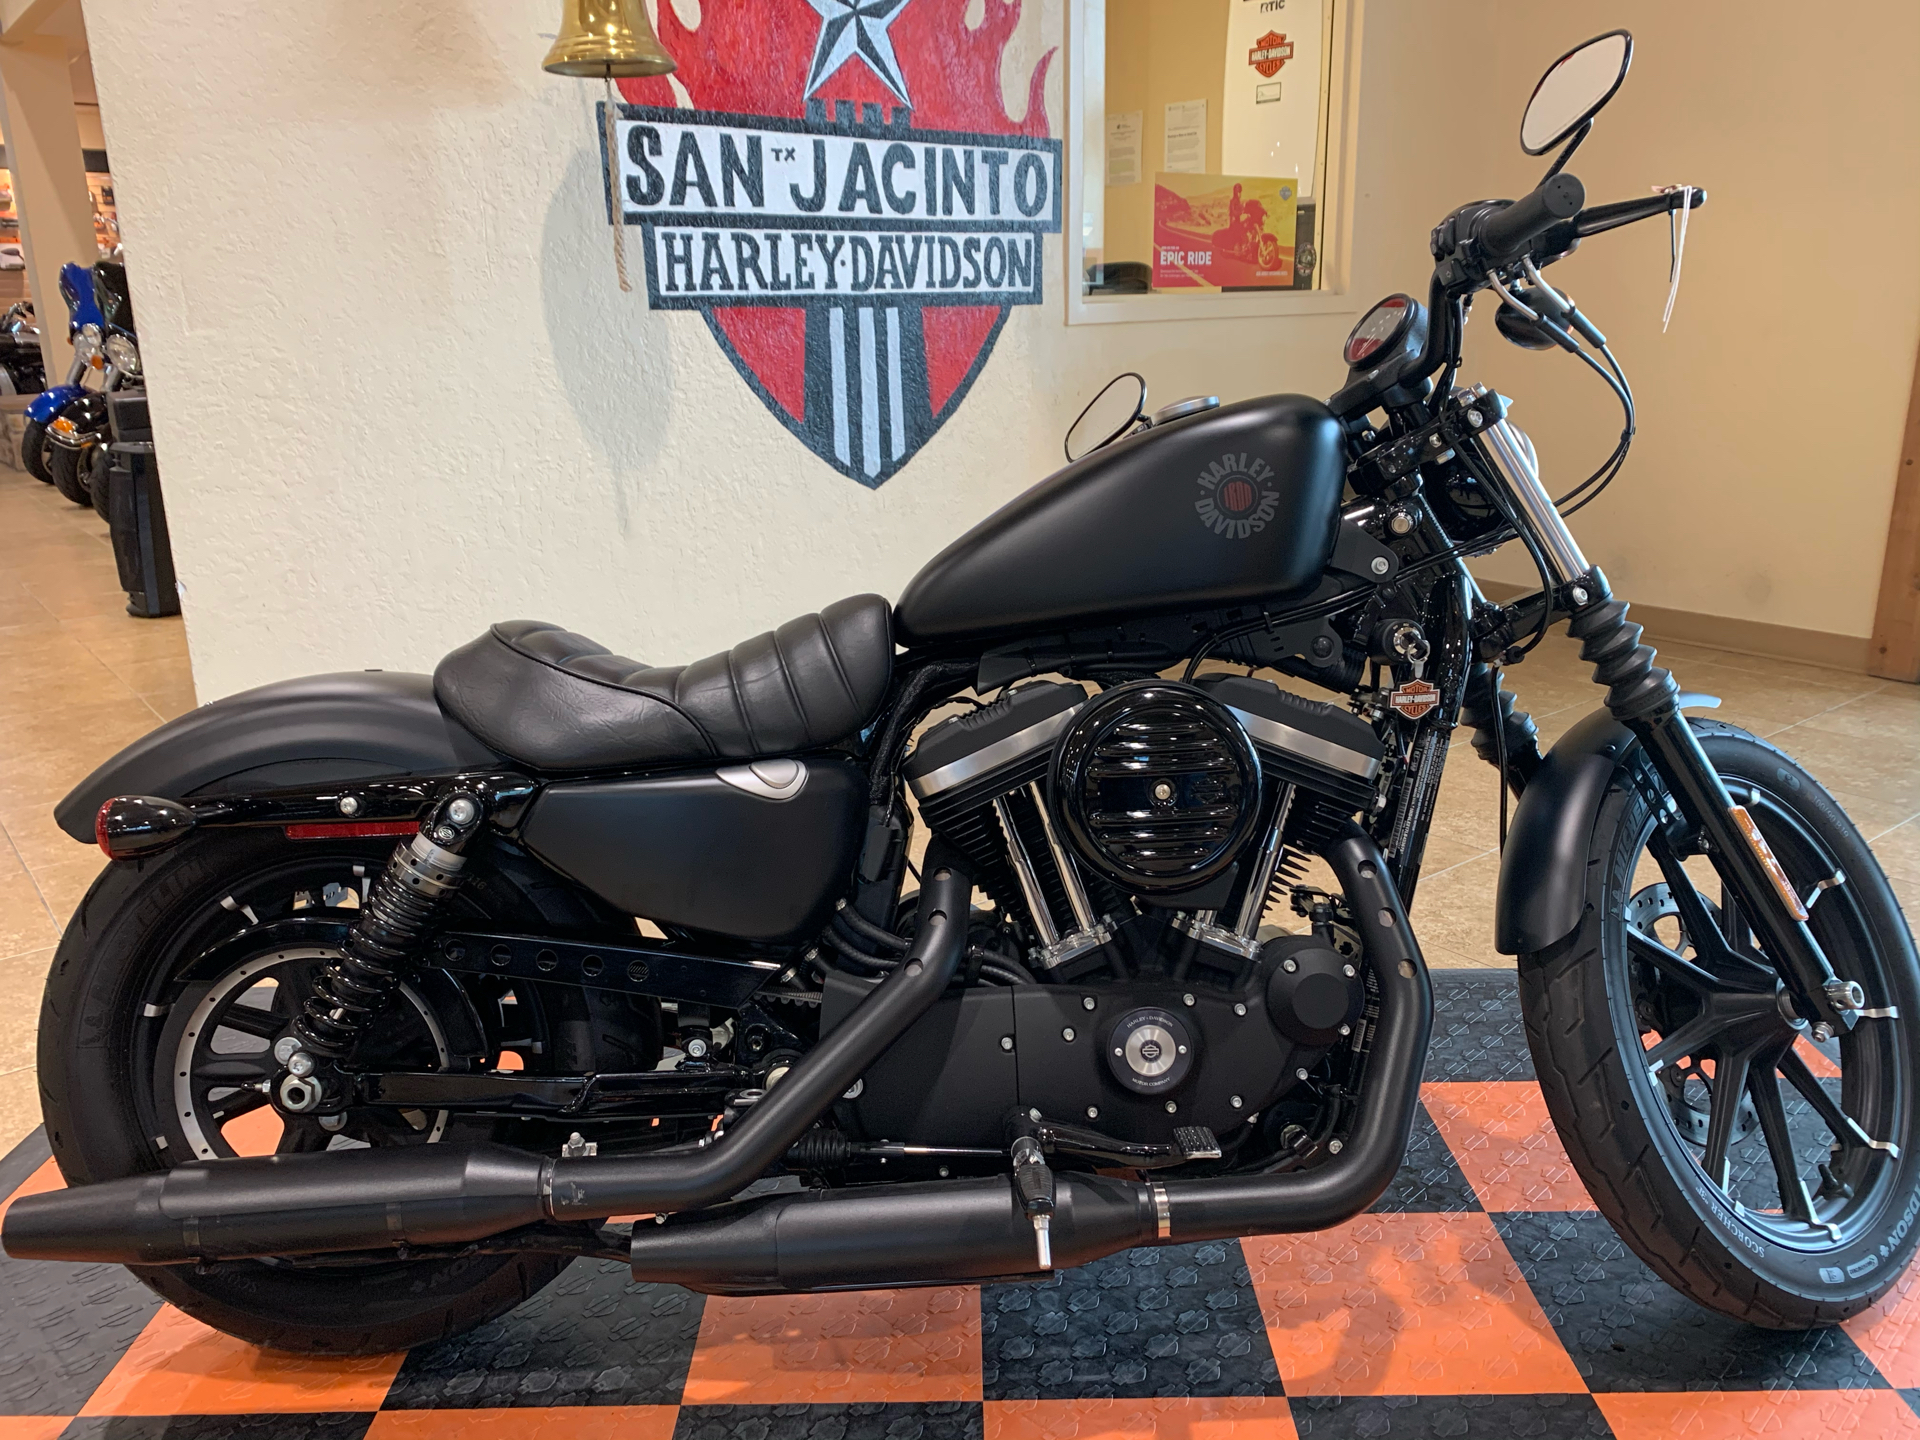 Used 2020 Harley Davidson Iron 883 Motorcycles In Pasadena Tx 433673 Black Denim